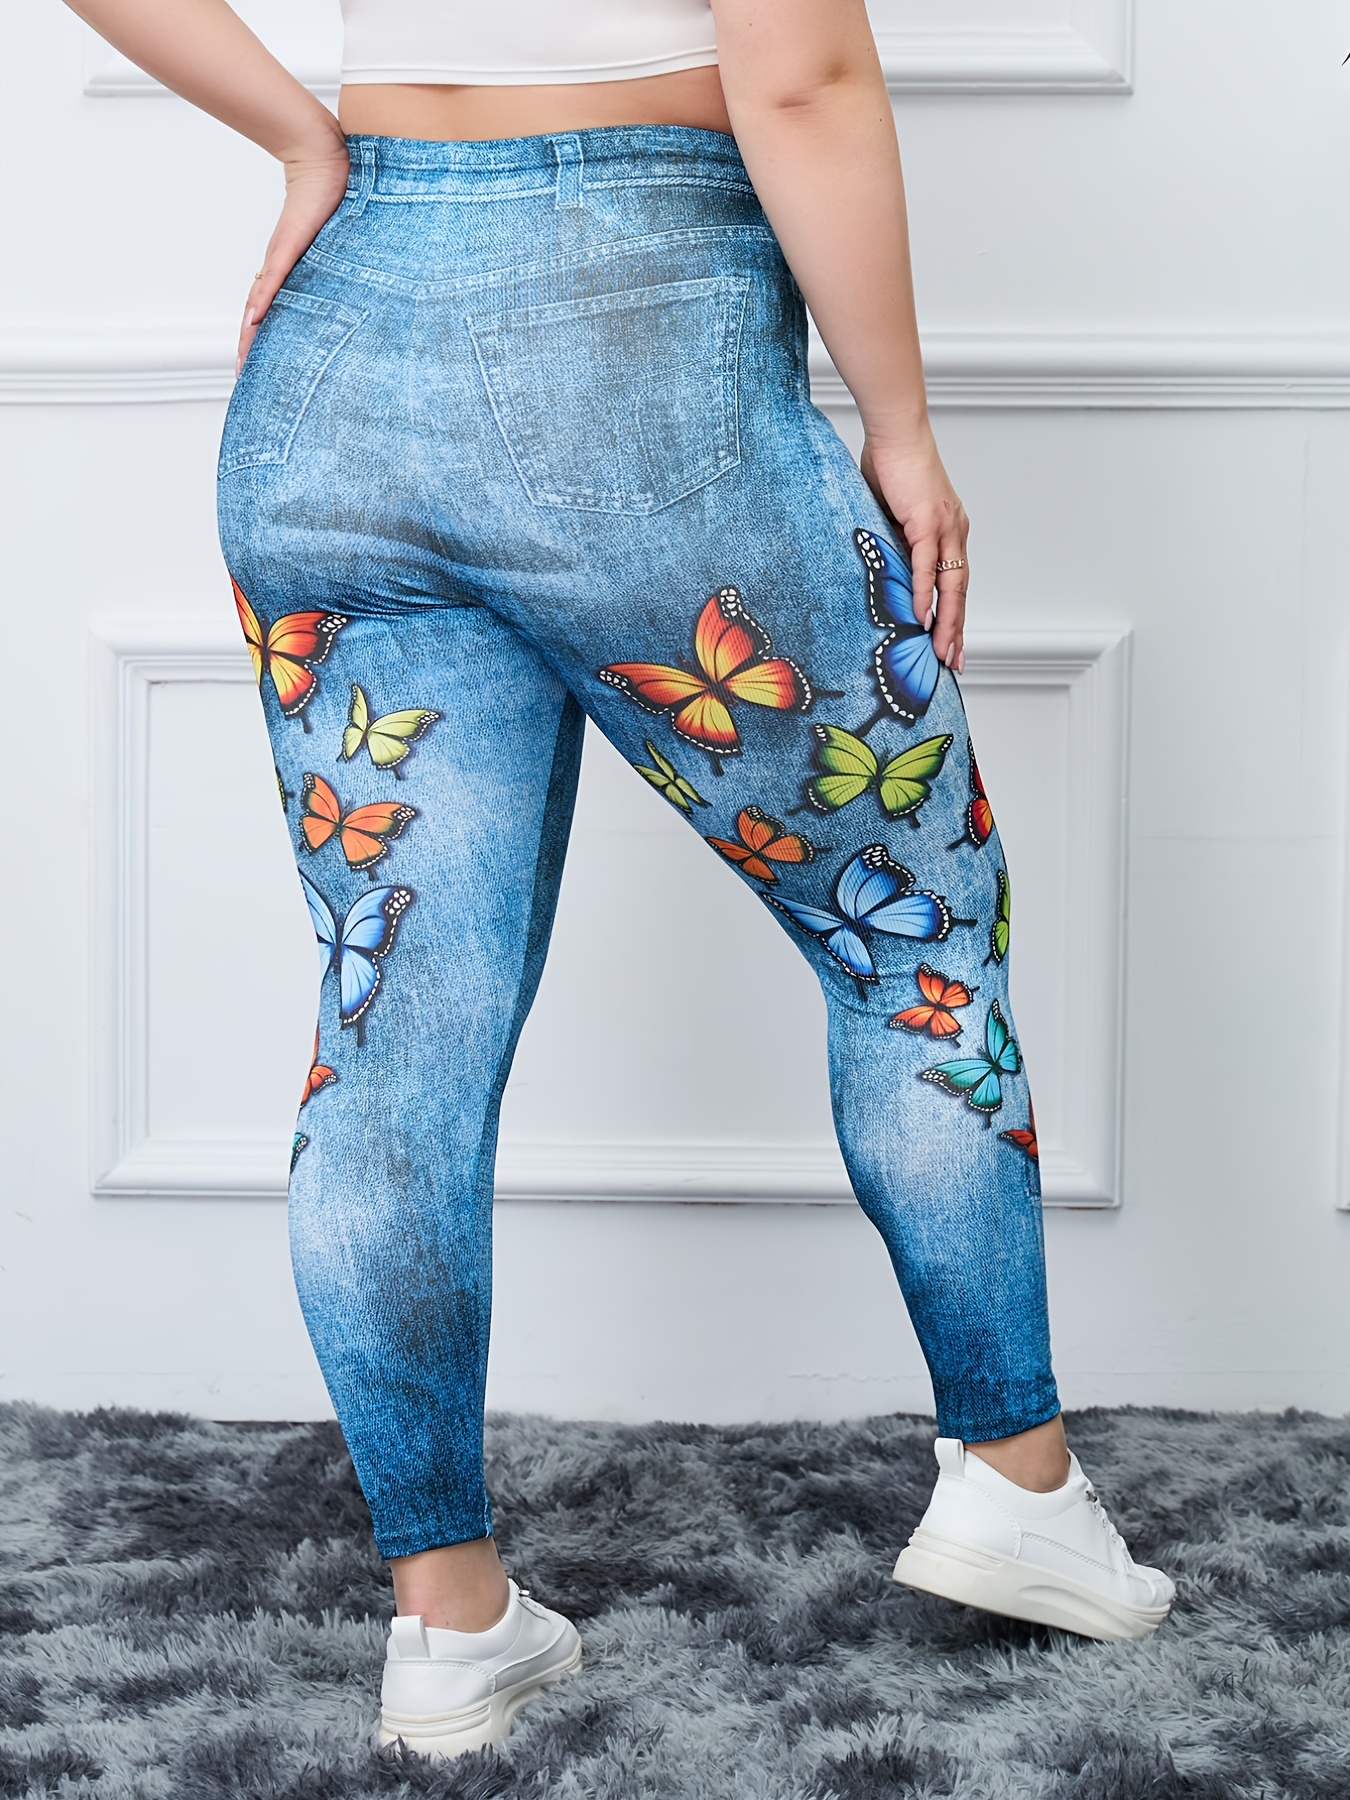 Plus Size Leggings For Women Women's Denim Print Jeans Look Like